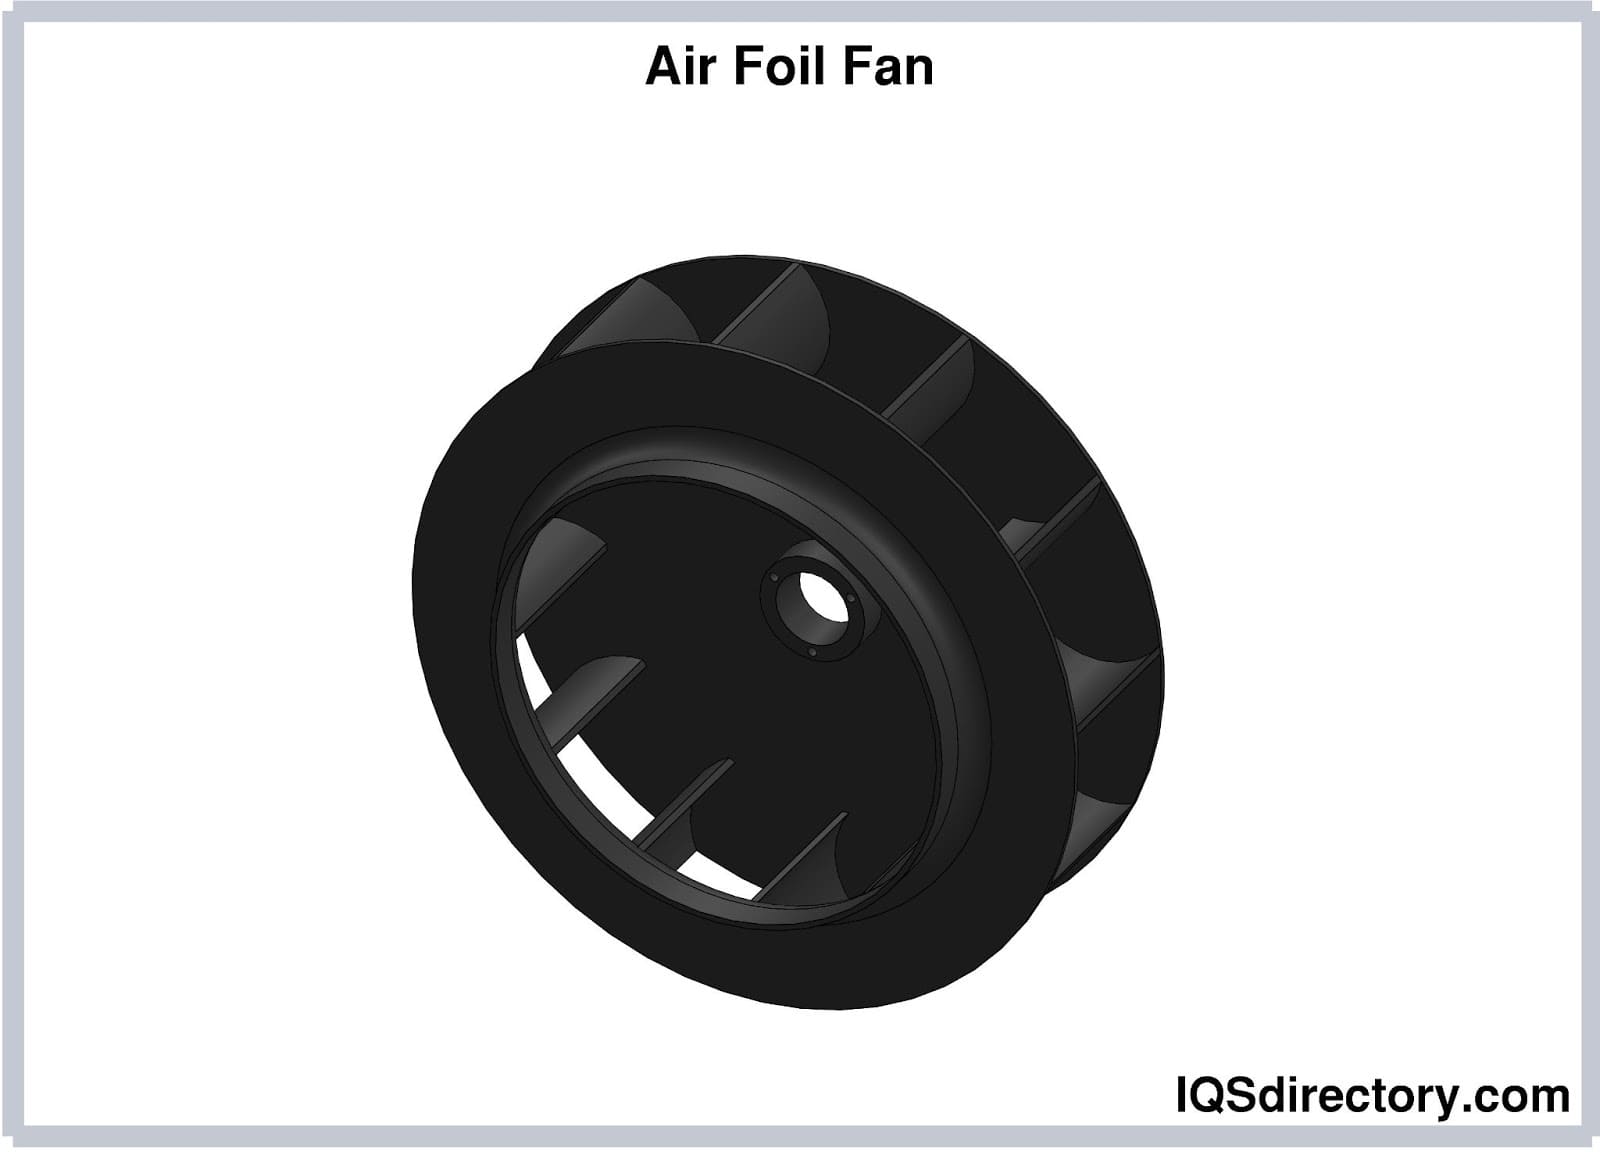 Air Foil Fan